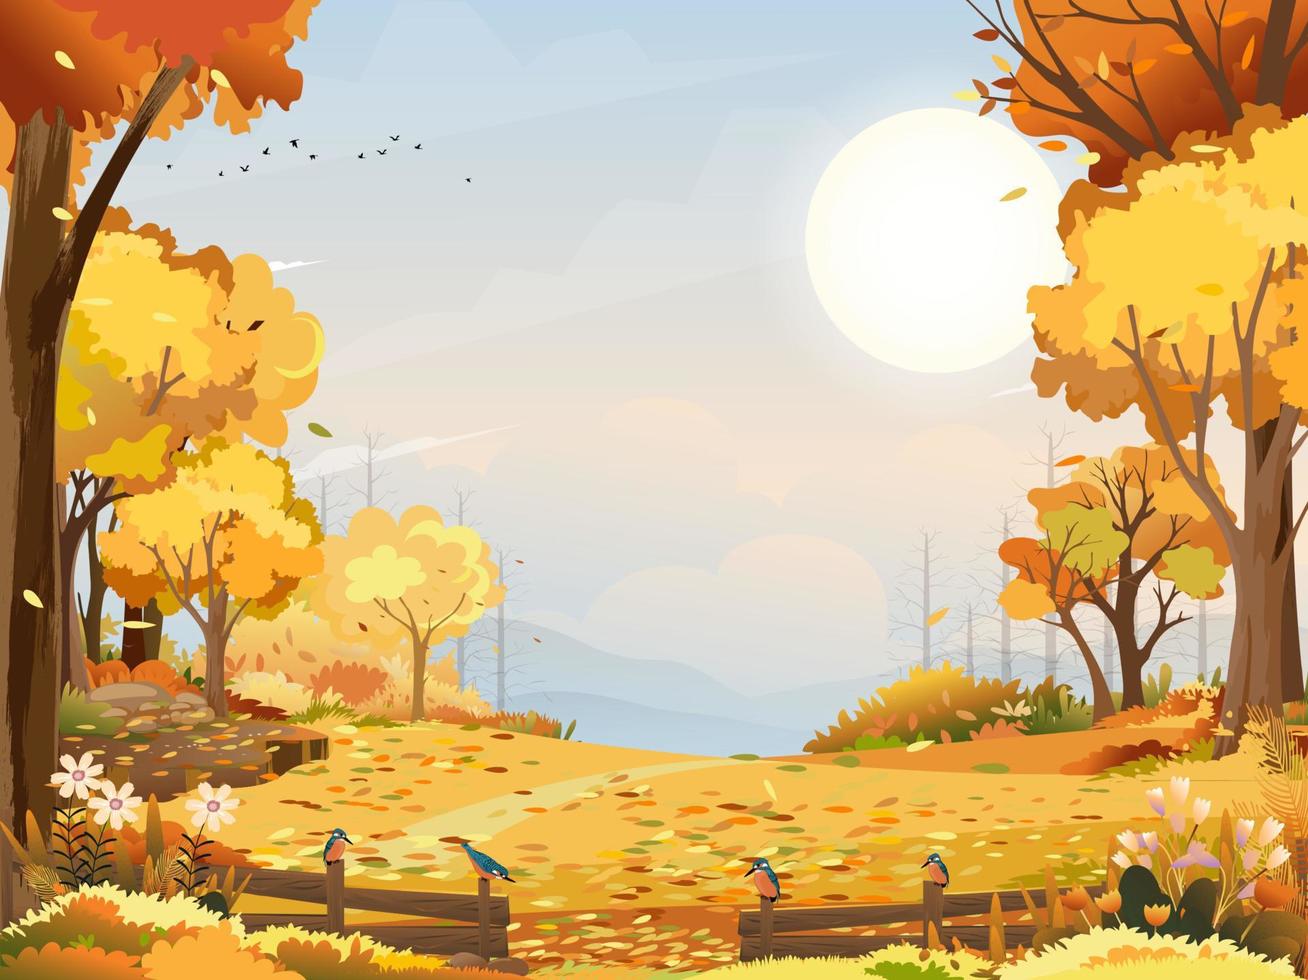 paisaje otoñal bosque maravilloso con tierra de pasto, mediados de otoño natural en follaje naranja, temporada de otoño con hermosa vista panorámica con puesta de sol detrás de la montaña y hojas de arces cayendo de los árboles vector